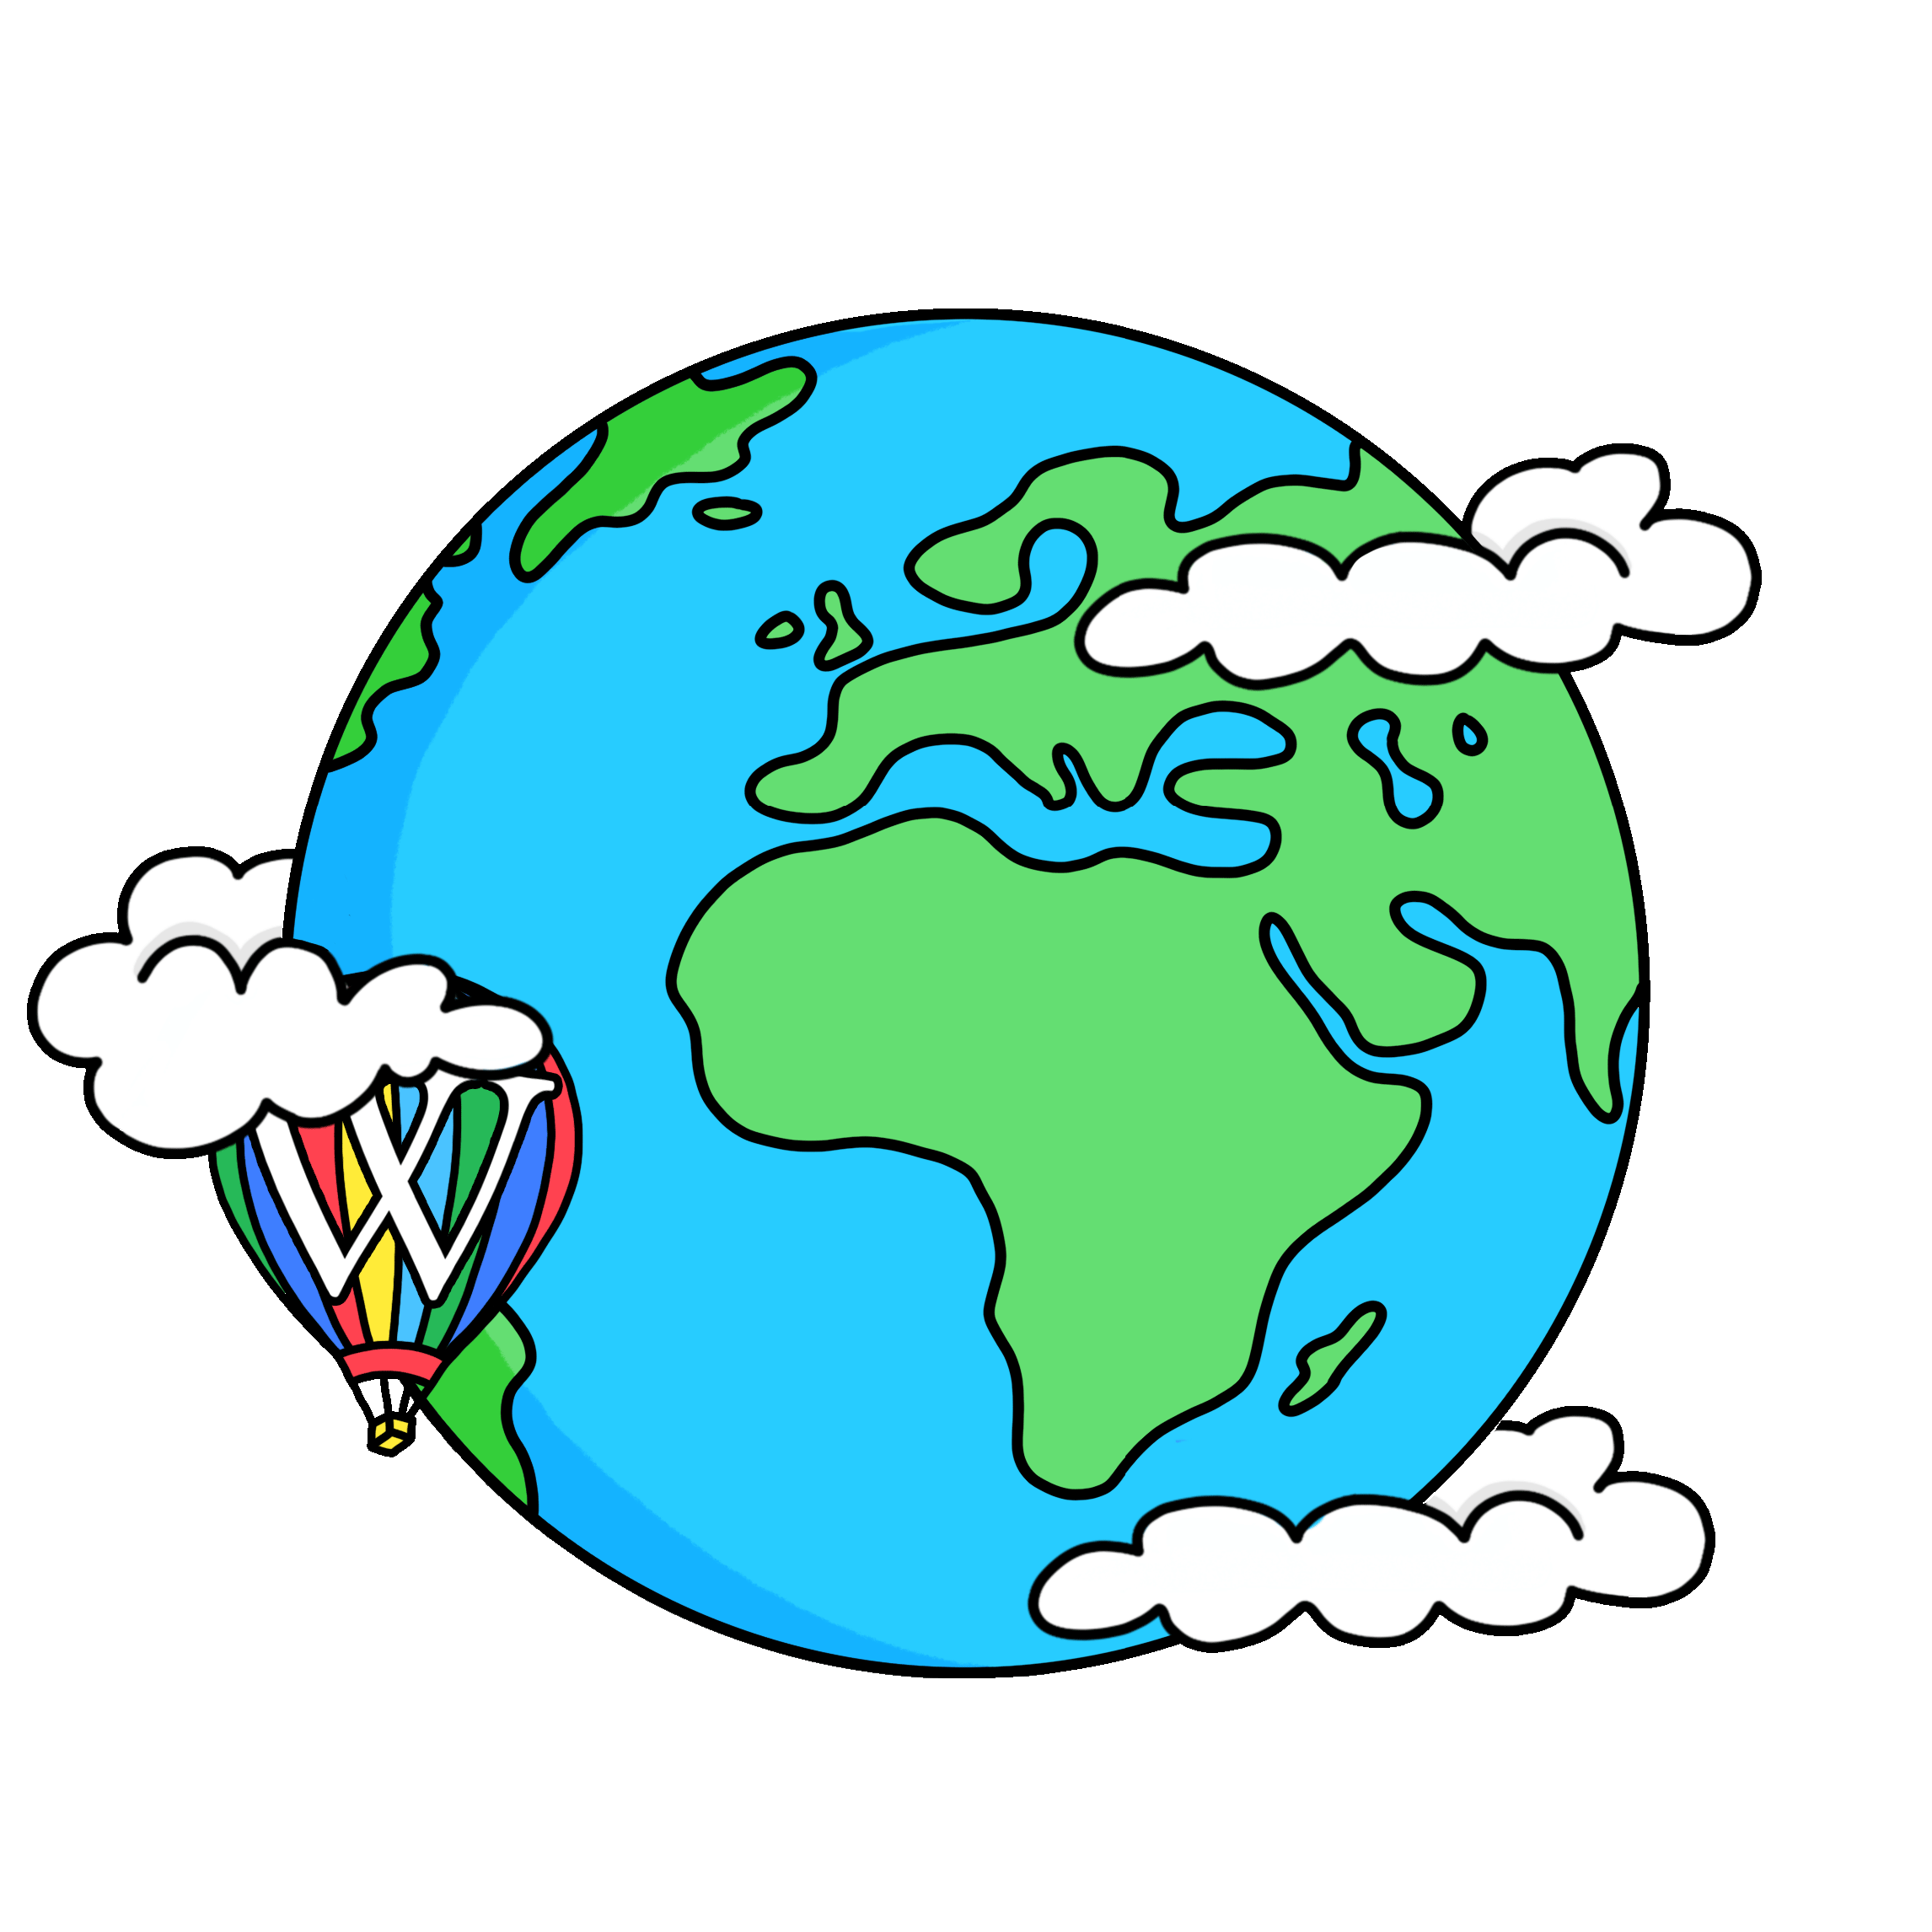 Fonte: WorldTravel - Idil Keysan - Wikimedia Giphy stickers 2019.gif